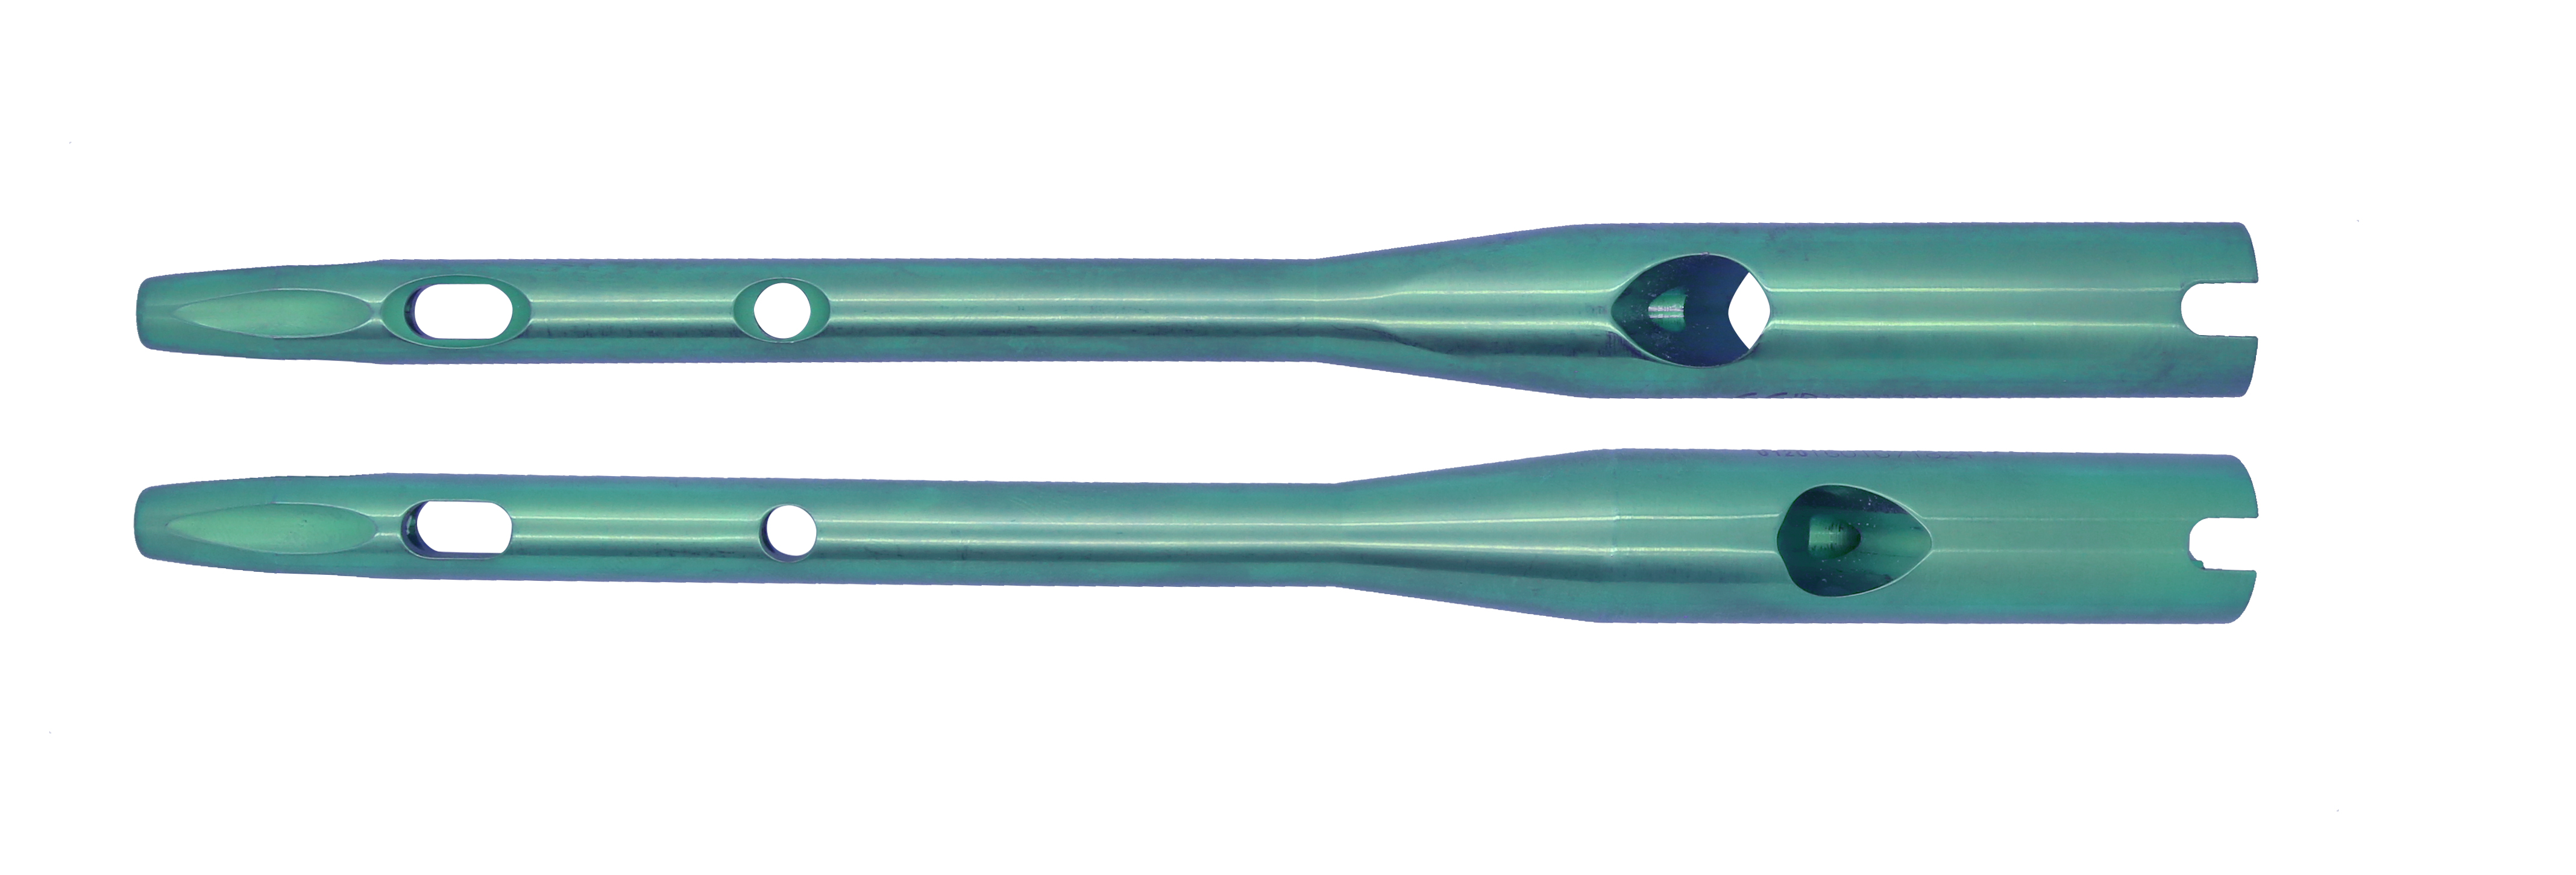 Antirtação femoral proximal do prego de PFNA, lâmina espiral com o braço distal dos objetivos, canulado